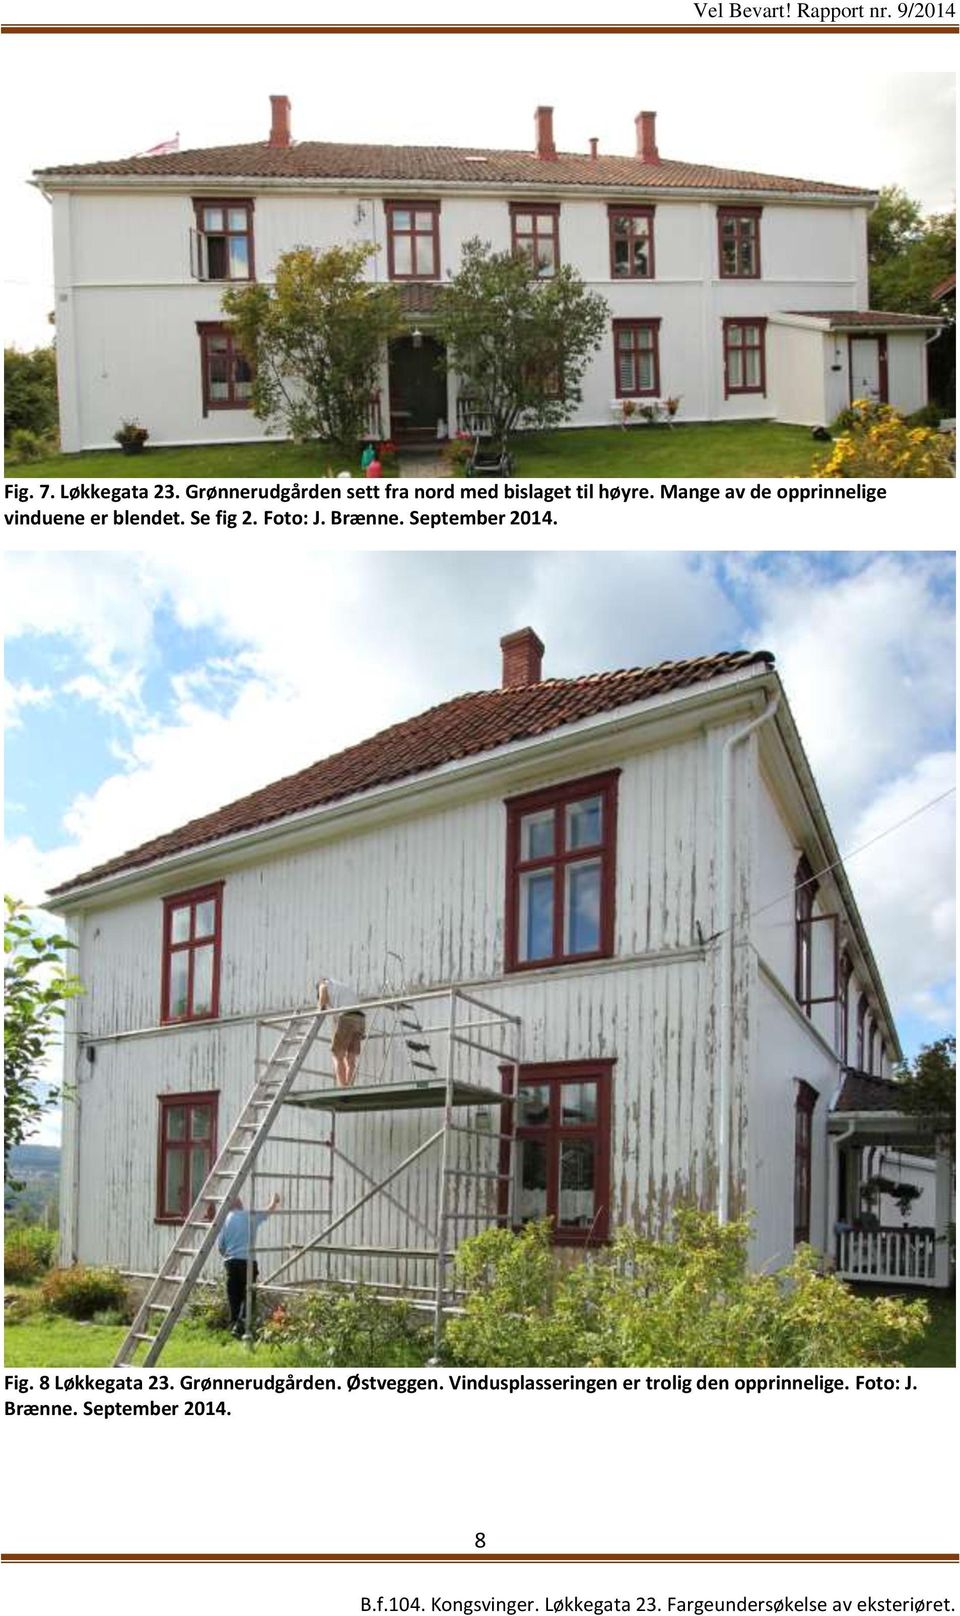 Mange av de opprinnelige vinduene er blendet. Se fig 2. Foto: J. Brænne.